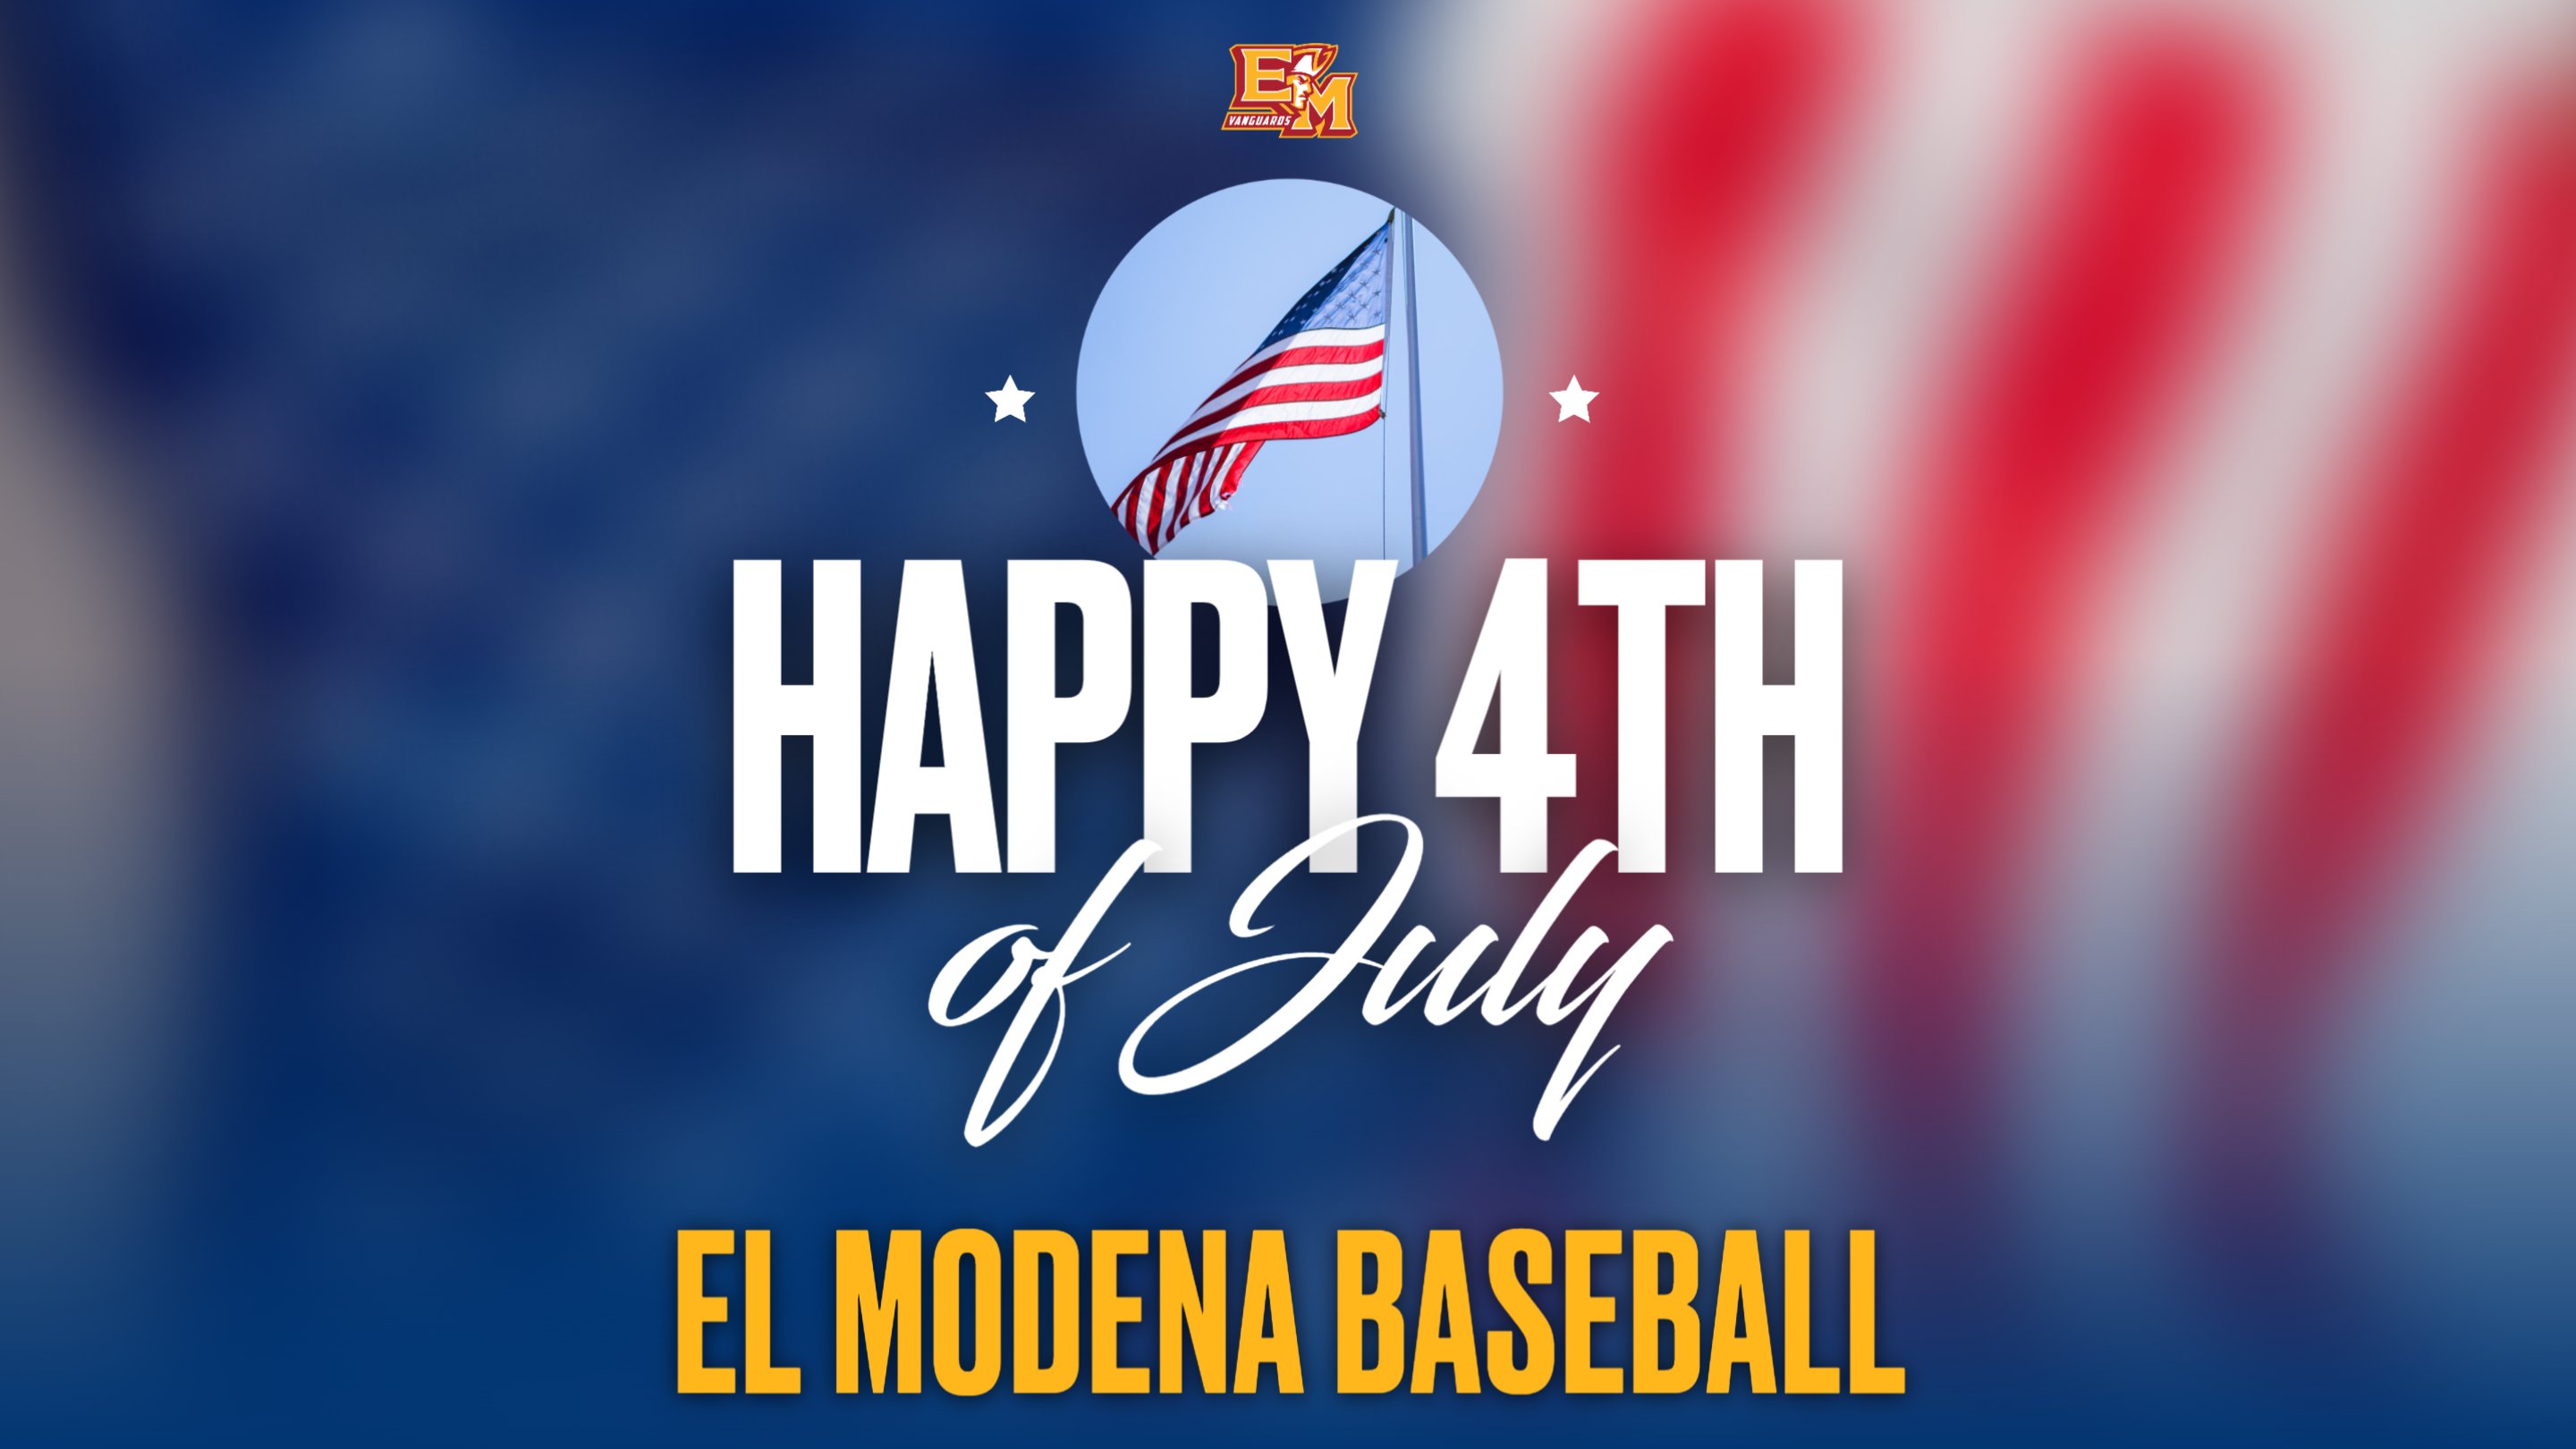 El Modena Baseball on X: HAPPY 4TH OF JULY FROM ELMO BASEBALL